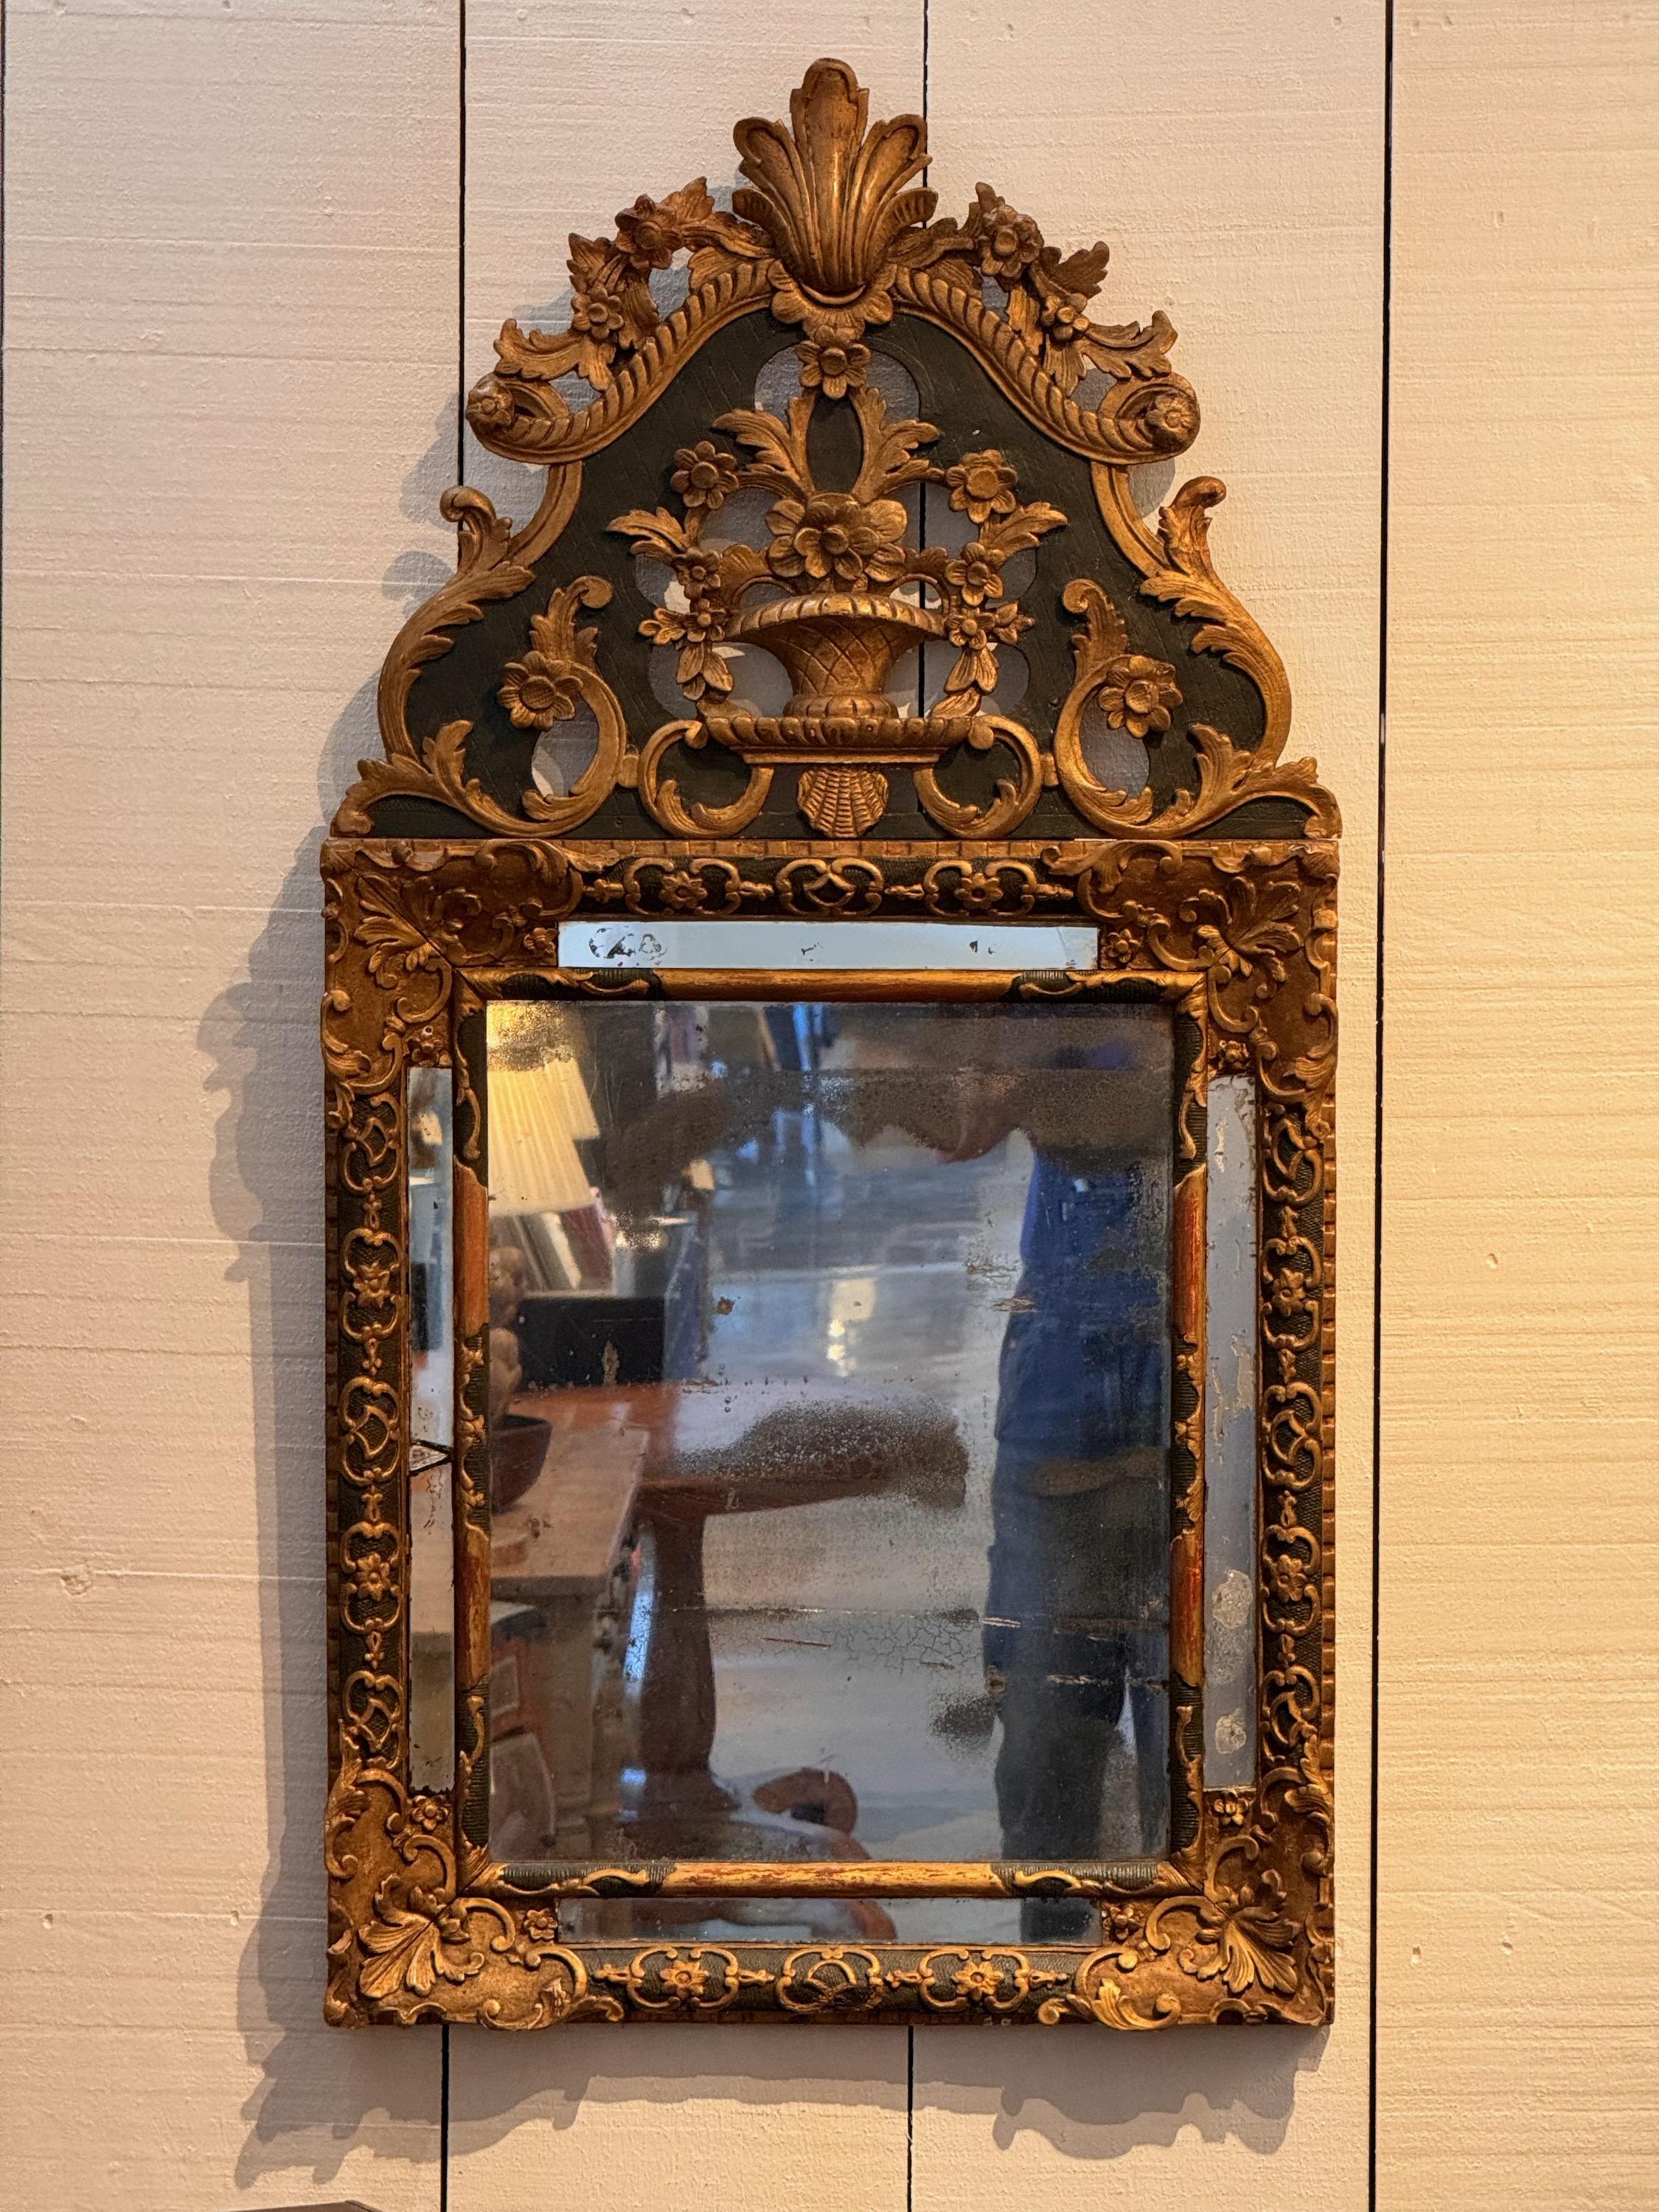 Dies ist ein schöner französischer Spiegel mit vergoldetem Dekor. Sofortige Schönheit.